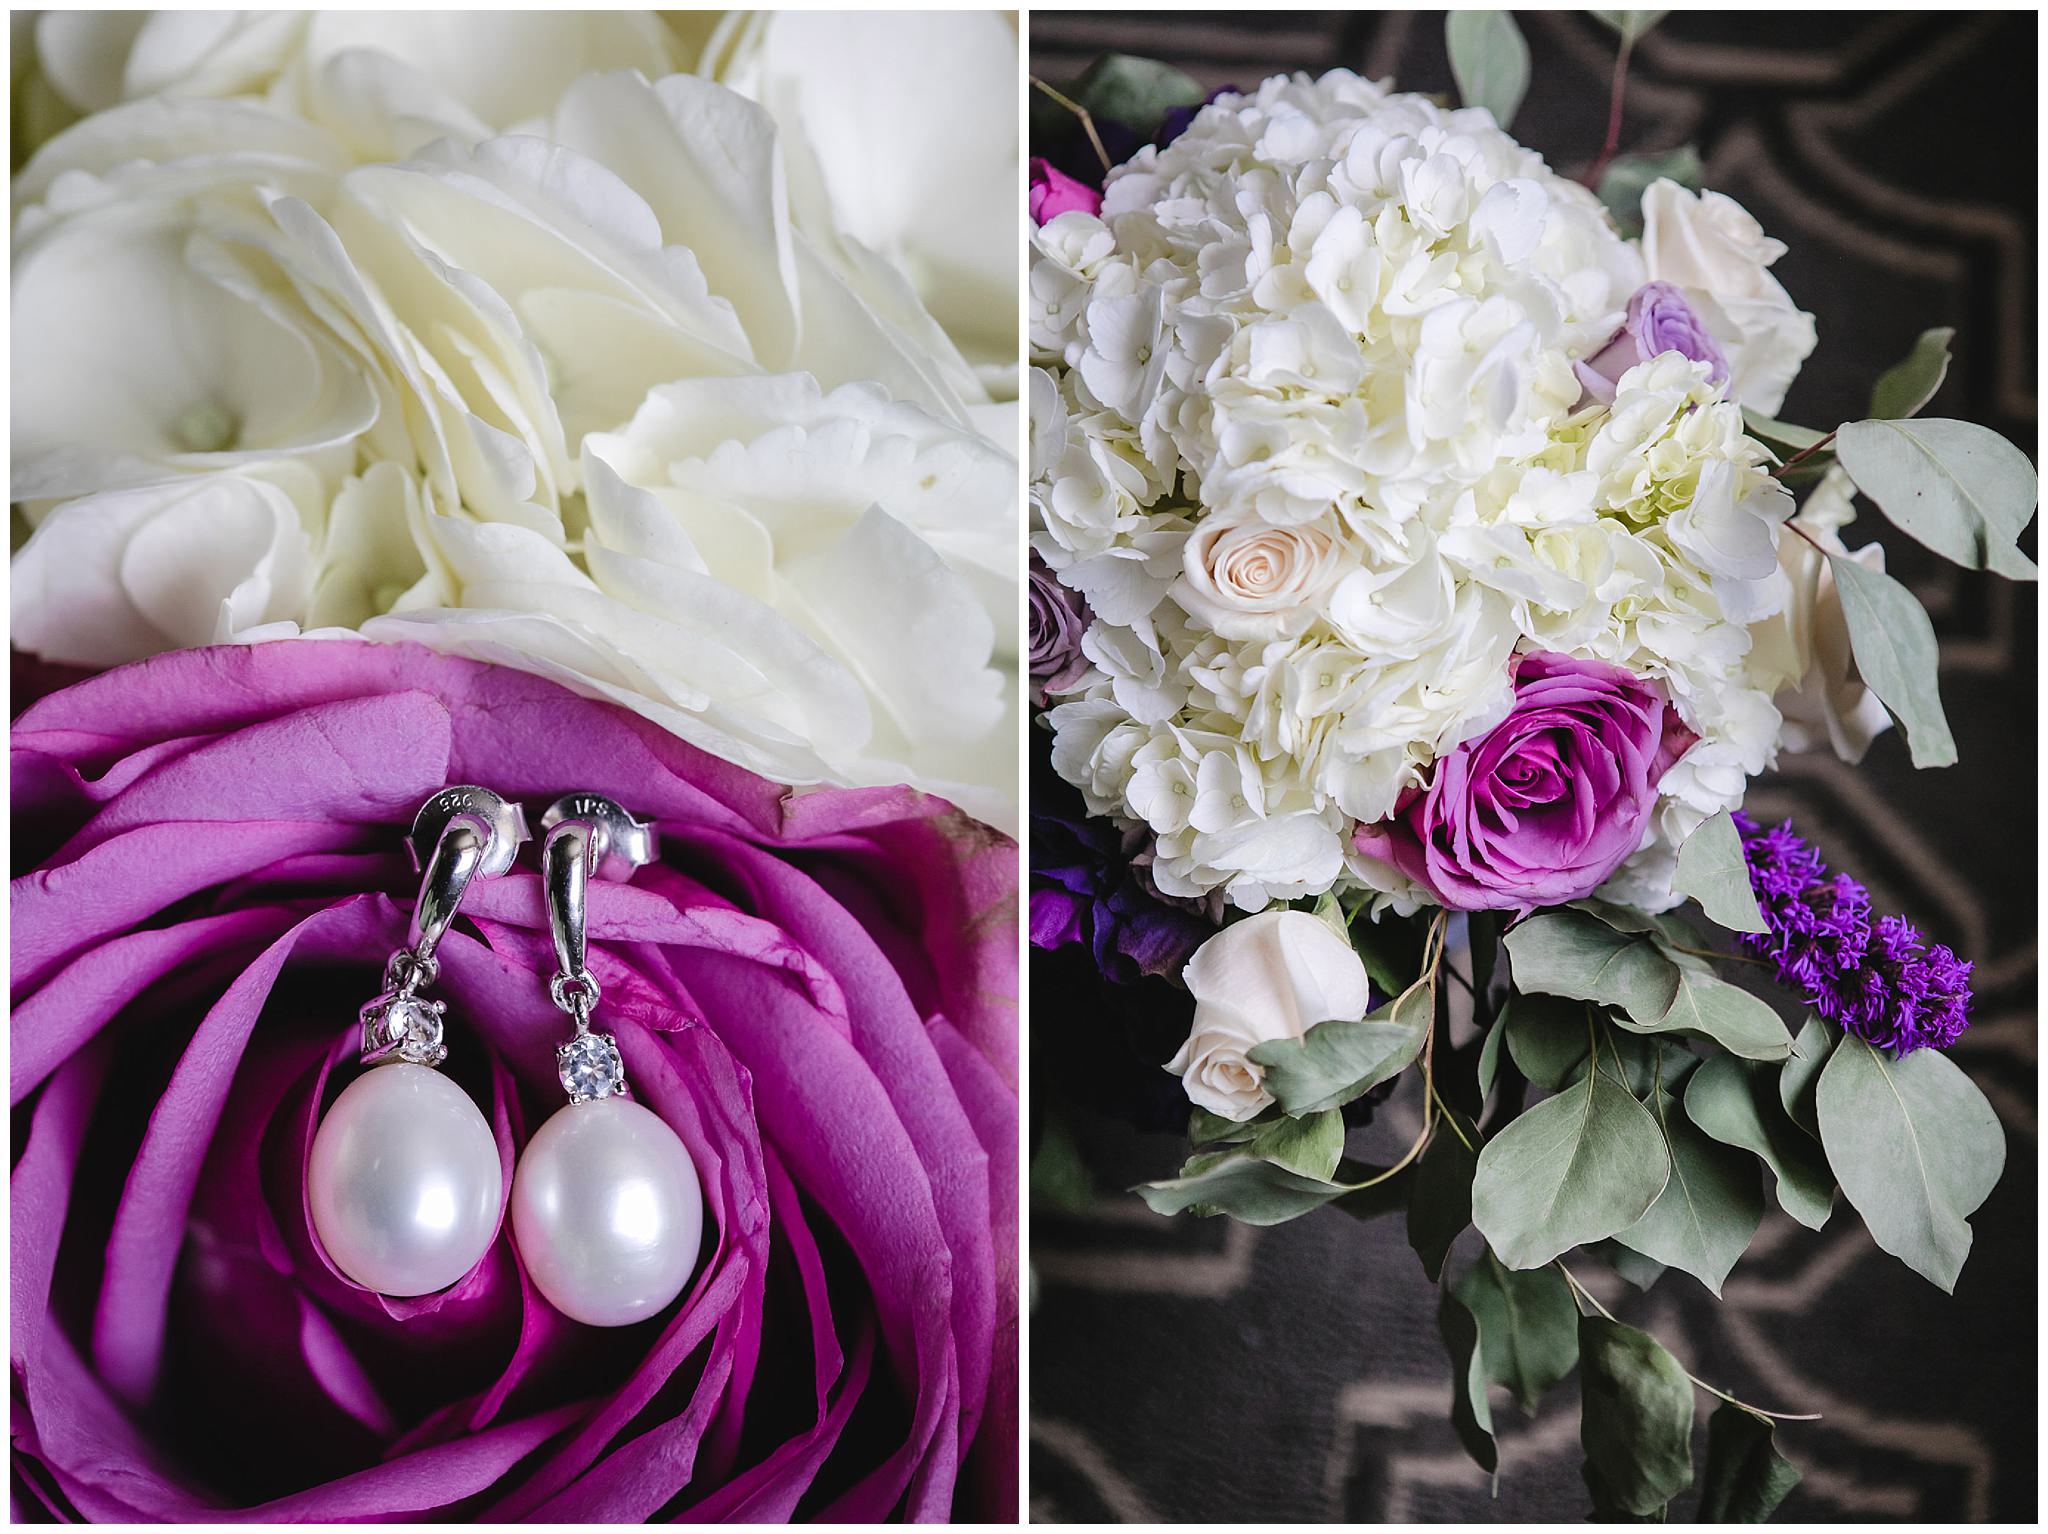 Bride's pear earrings rest in a purple rose in her bouquet